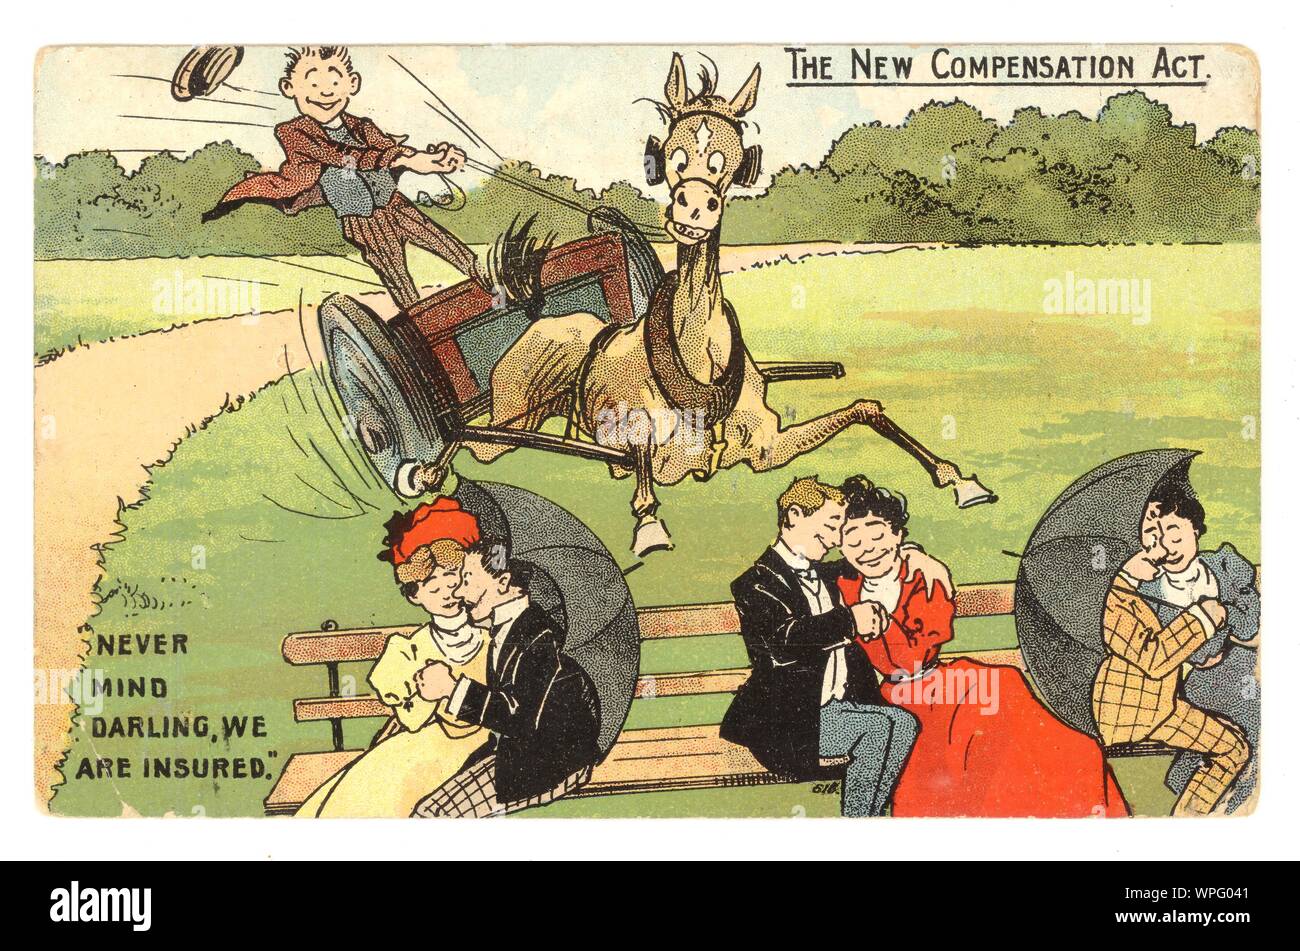 Anfang 1900 politische Comic Postkarten, 20. Juli 1911 datiert. Die neue Vergütung handeln bezieht sich auf die Entschädigung Act von 1906 - Diese neue britische Rechtsvorschriften erfassten Verletzungen von den Arbeitnehmern getragen, während bei der Arbeit. Wenn Arbeitnehmer eine Körperverletzung bei der Arbeit hatten, würden Sie auf Entschädigung. Es wurde über die von der Reform der Liberalen Partei von 1906 - 1914, aber es war schwierig und teuer die Verantwortlichkeit der Arbeitgeber zu beweisen, Großbritannien Stockfoto